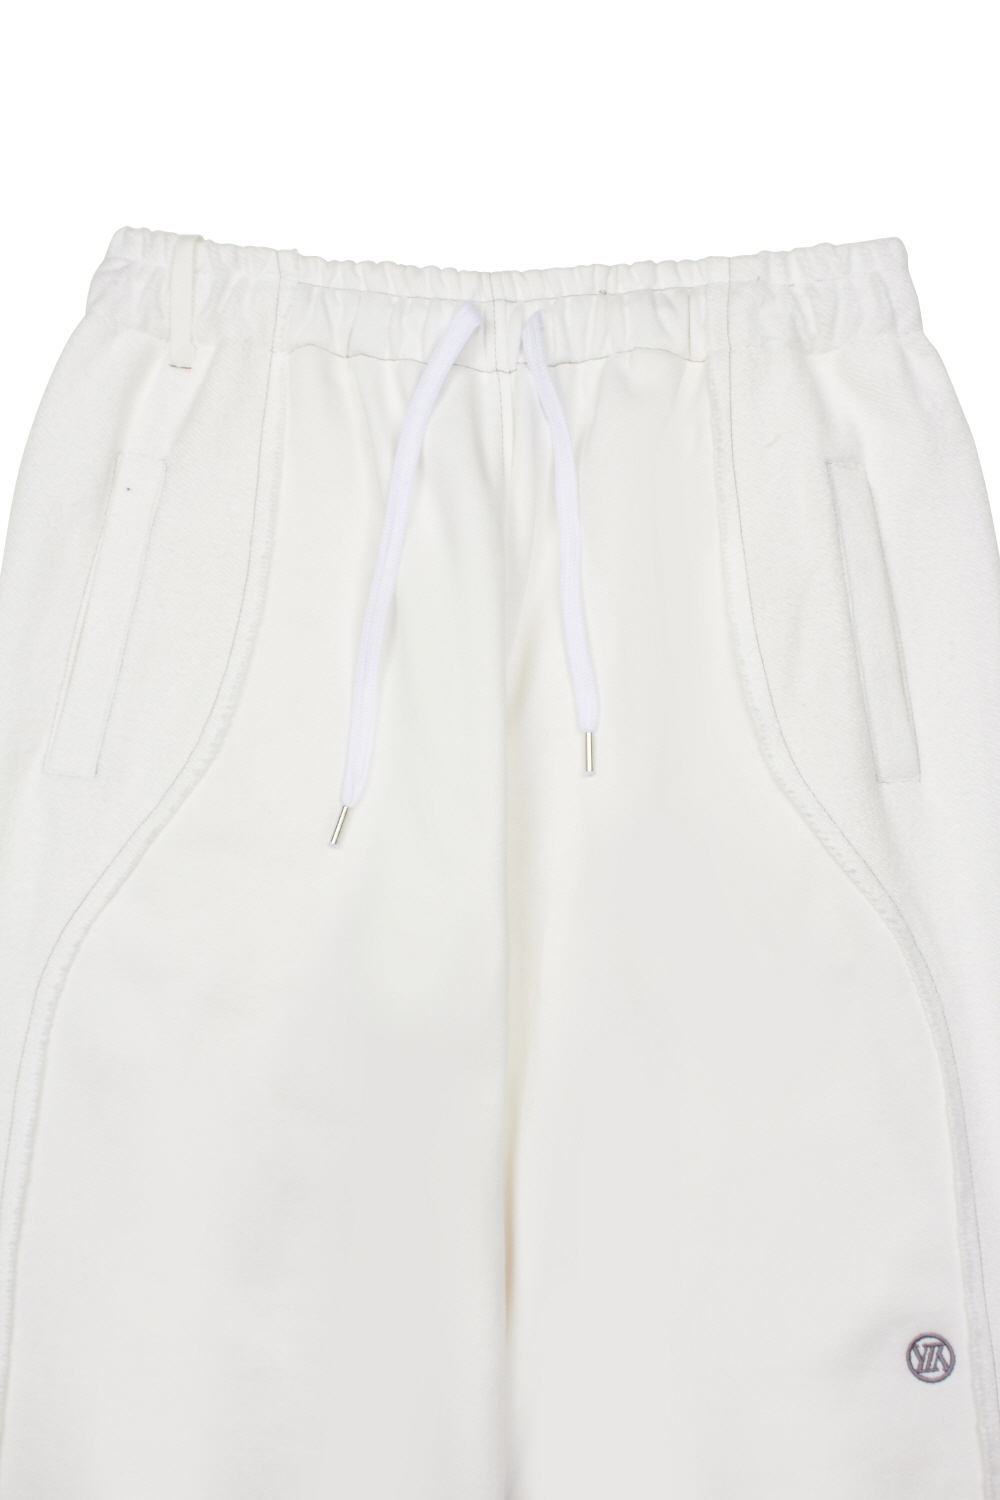 Pants white color image-S18L5